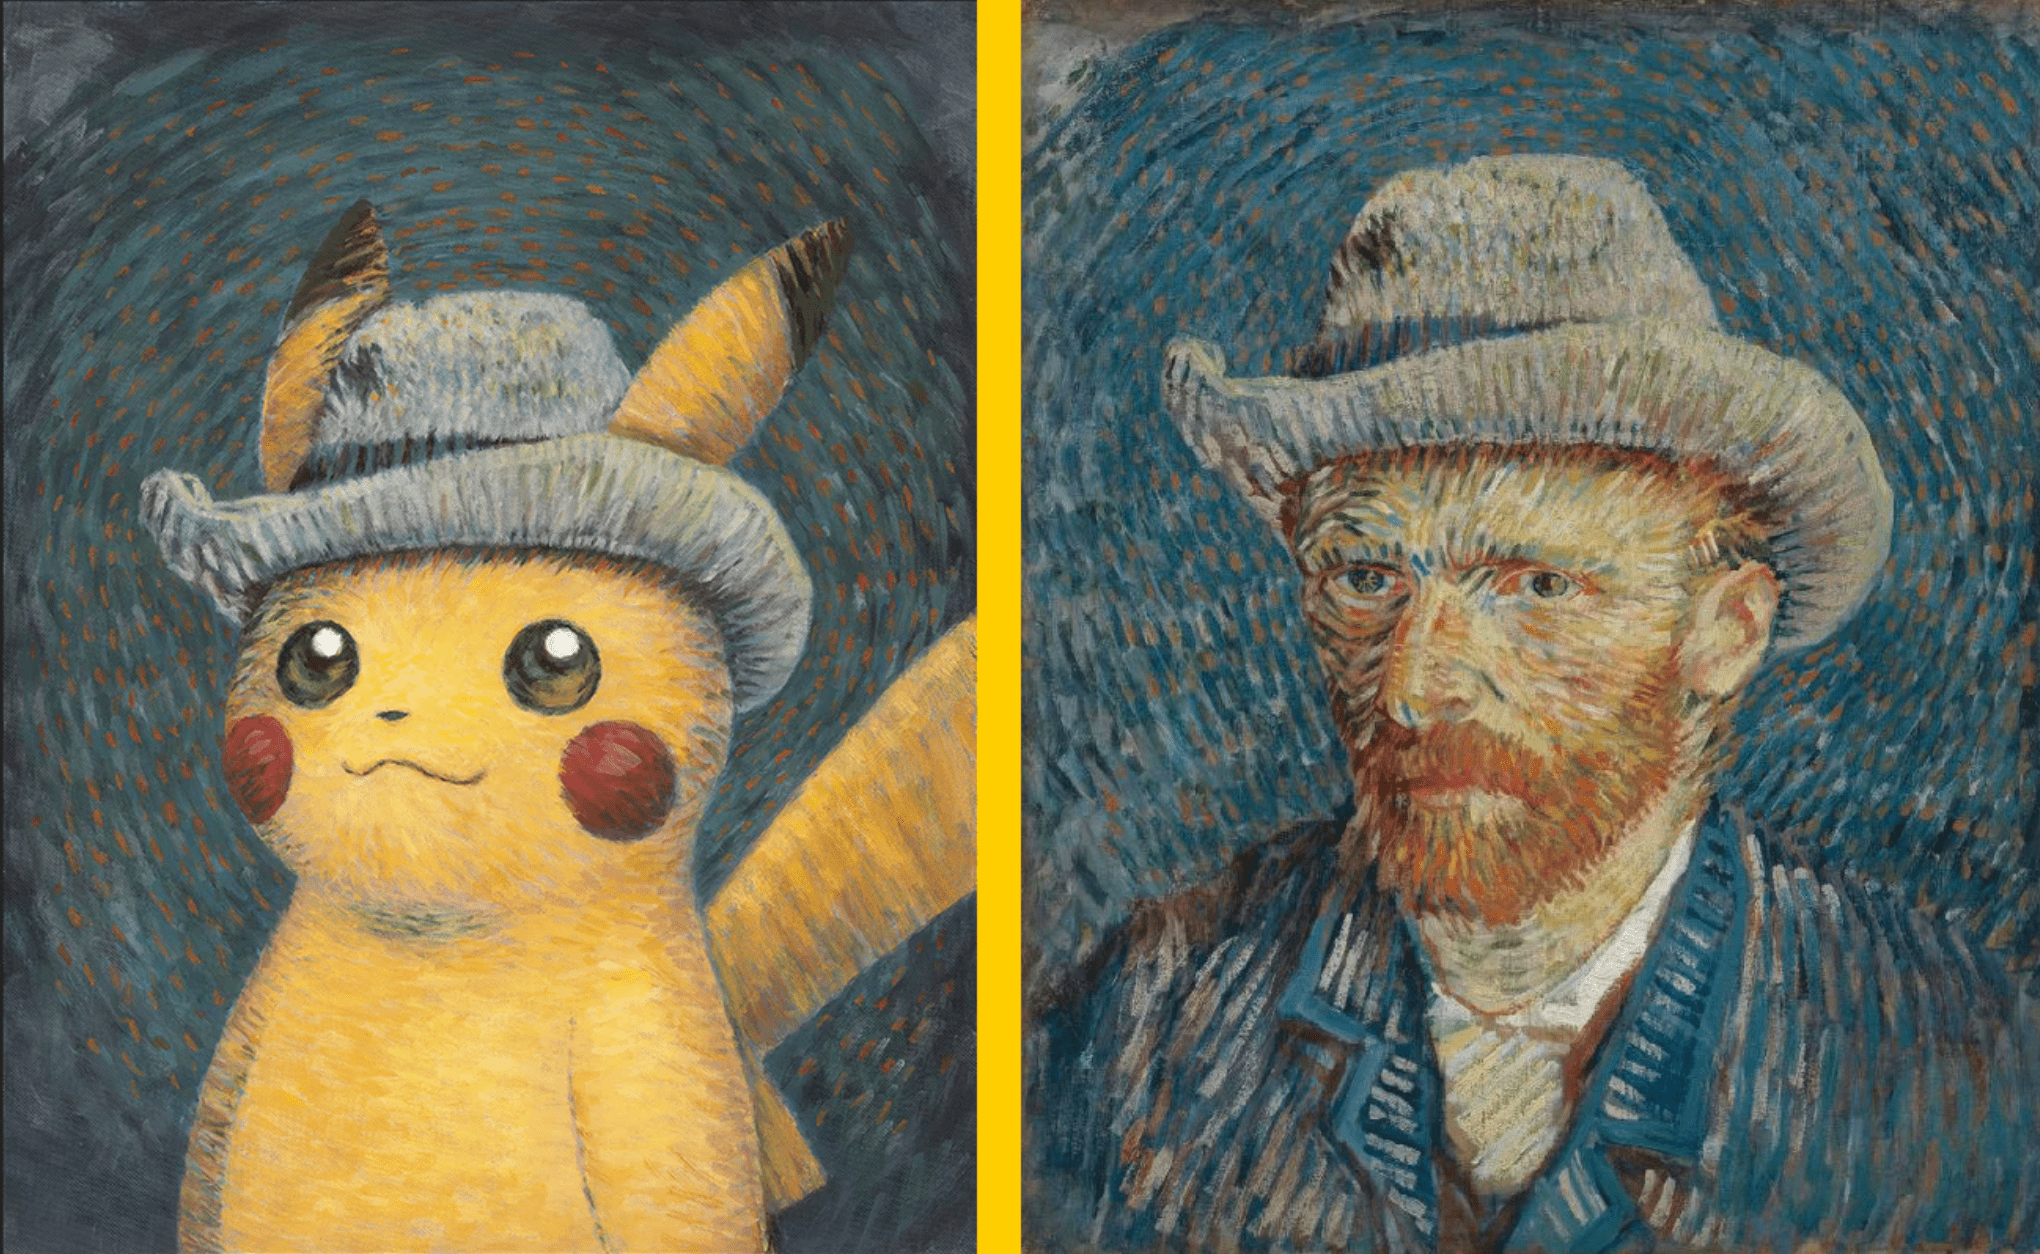 Pokémon Şirketi özür diler ve Van Gogh işbirliği hisse senedi sorunları nedeniyle “ezici talebi” suçlar